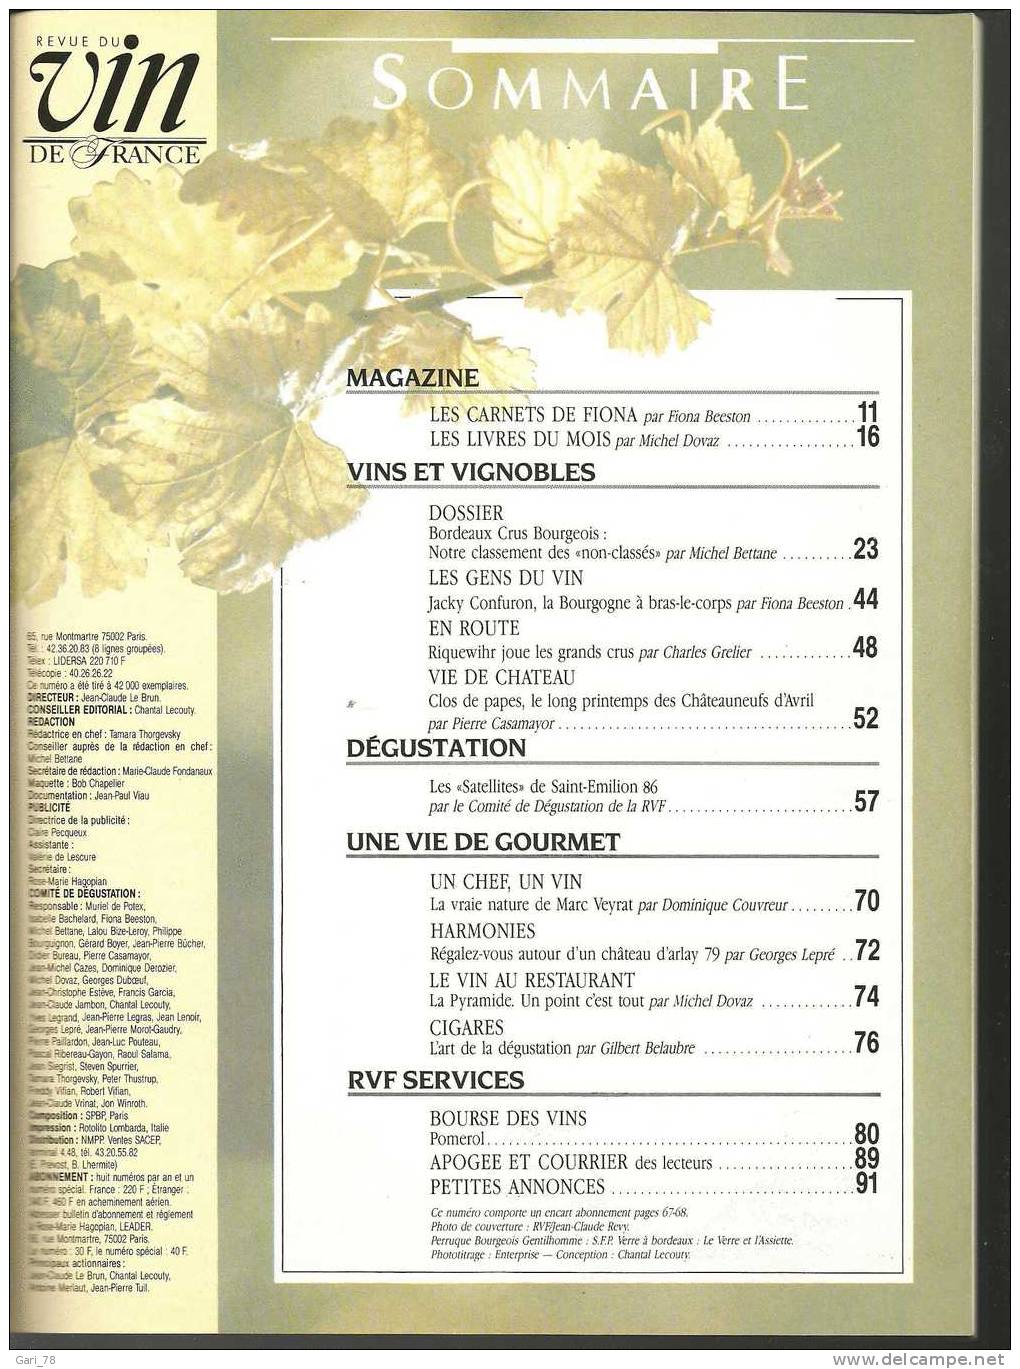 Revue Du VIN DE FRANCE N° 340 - Septembre 1989 : Bordeaux Crus Bourgeois, Classement "non Classés"  Riquewihr Etc - Küche & Wein